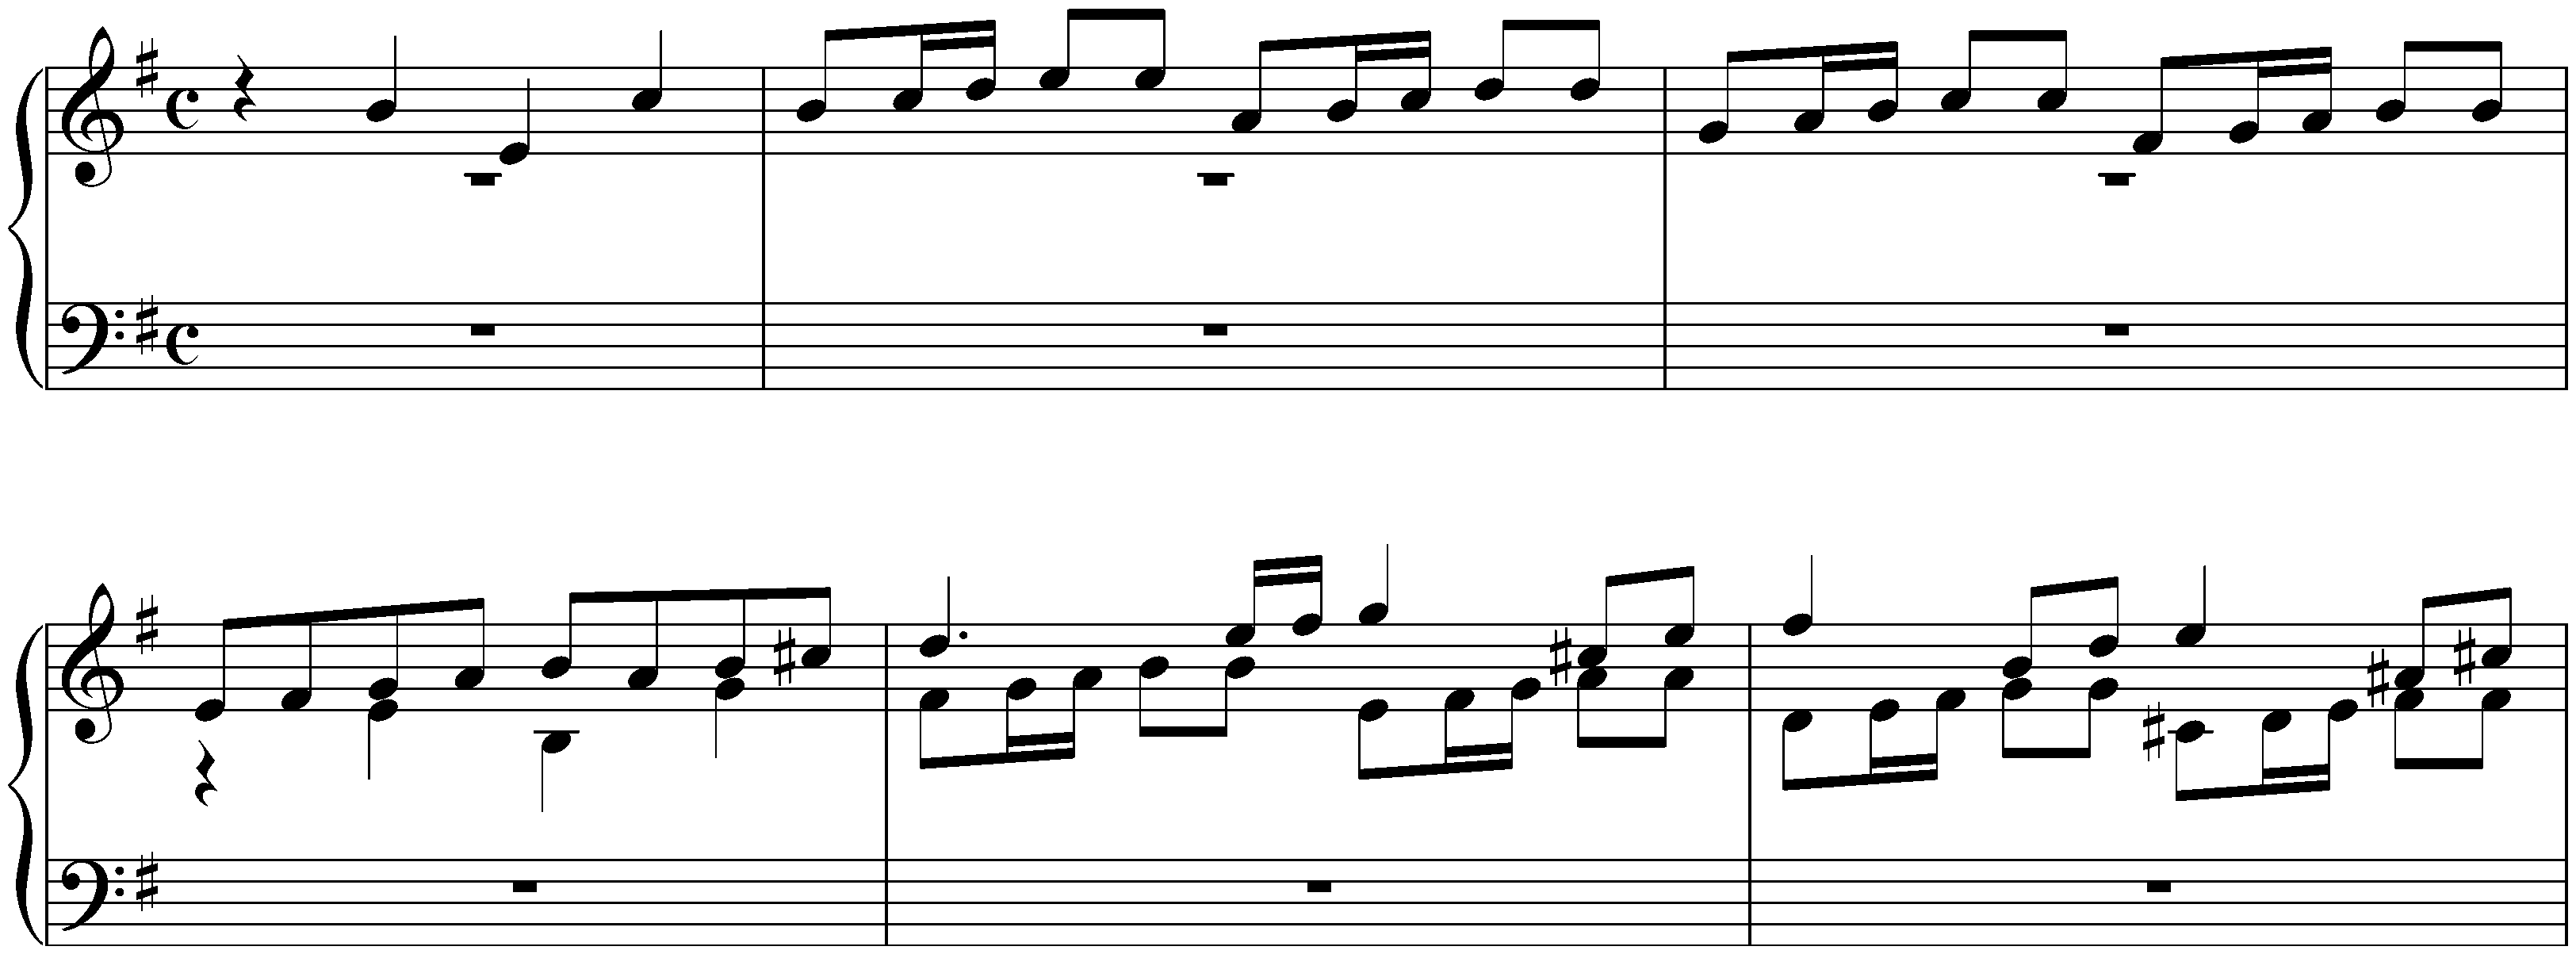 Fugue in E minor, BWV 956